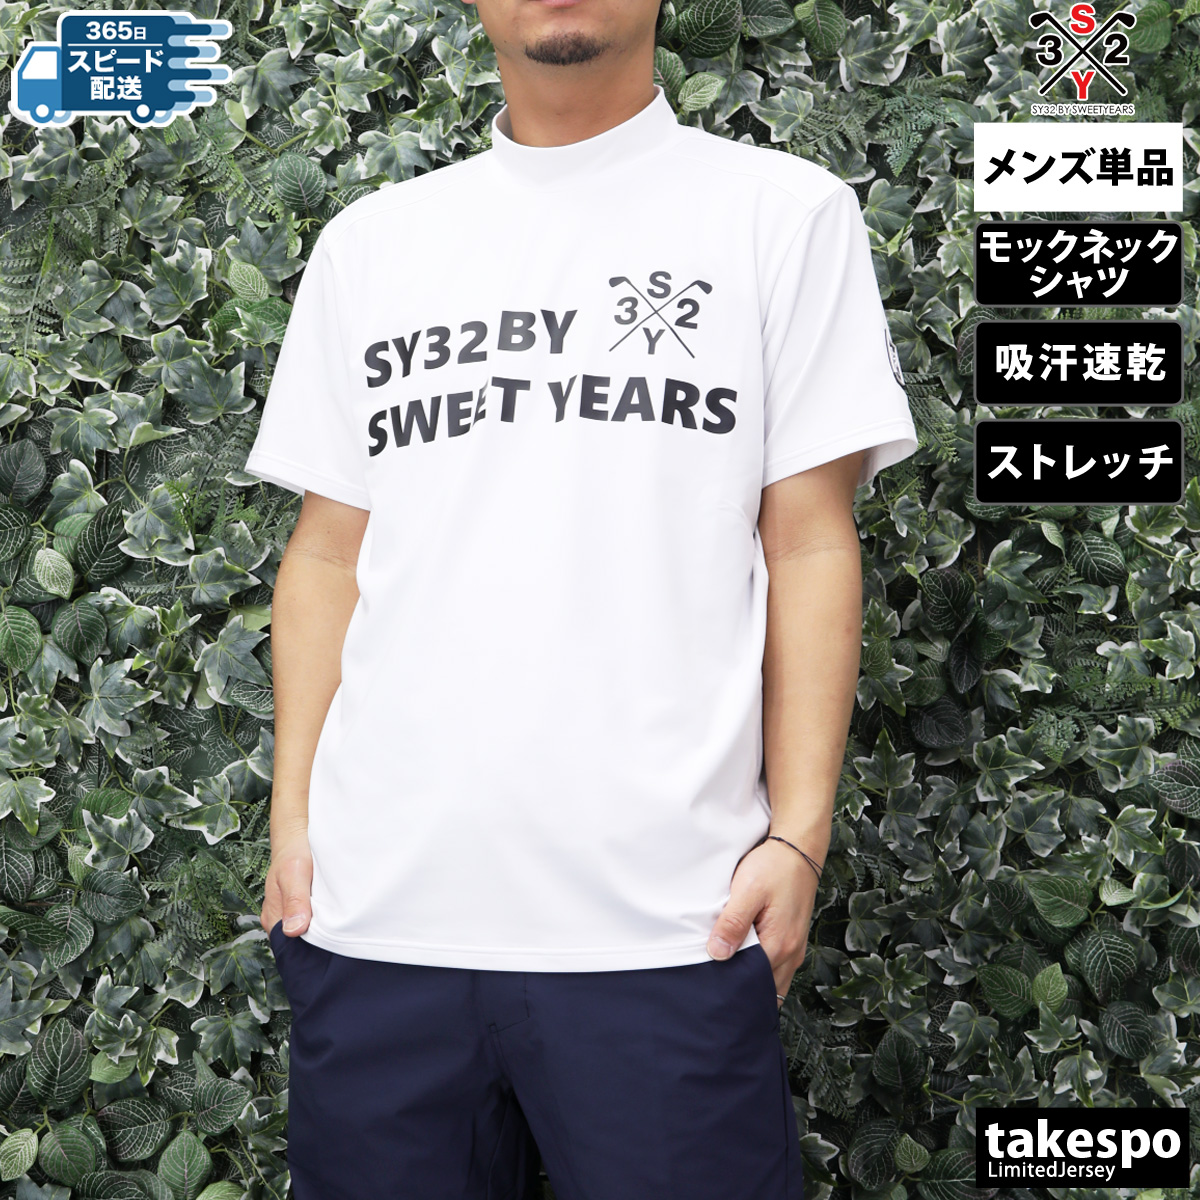 スウィートイヤーズ Tシャツ メンズ 上 SY32 by SWEET YEARS ゴルフ 半袖 モッ...